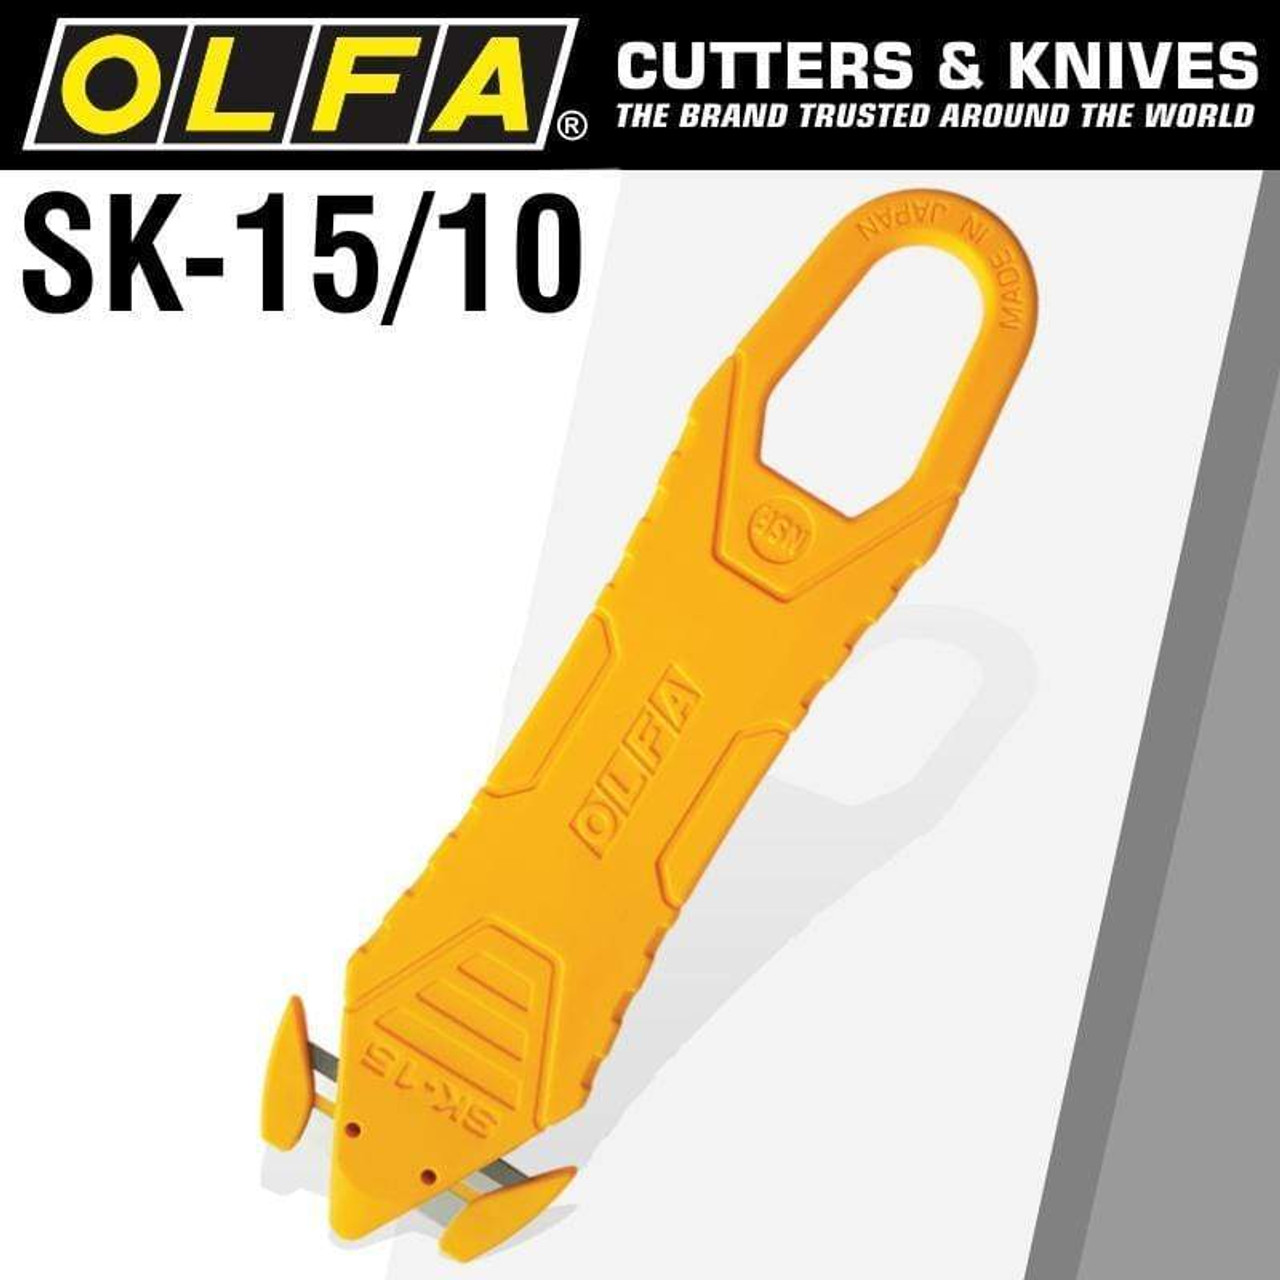 Olfa SK-10 Concealed Blade Safety Knife